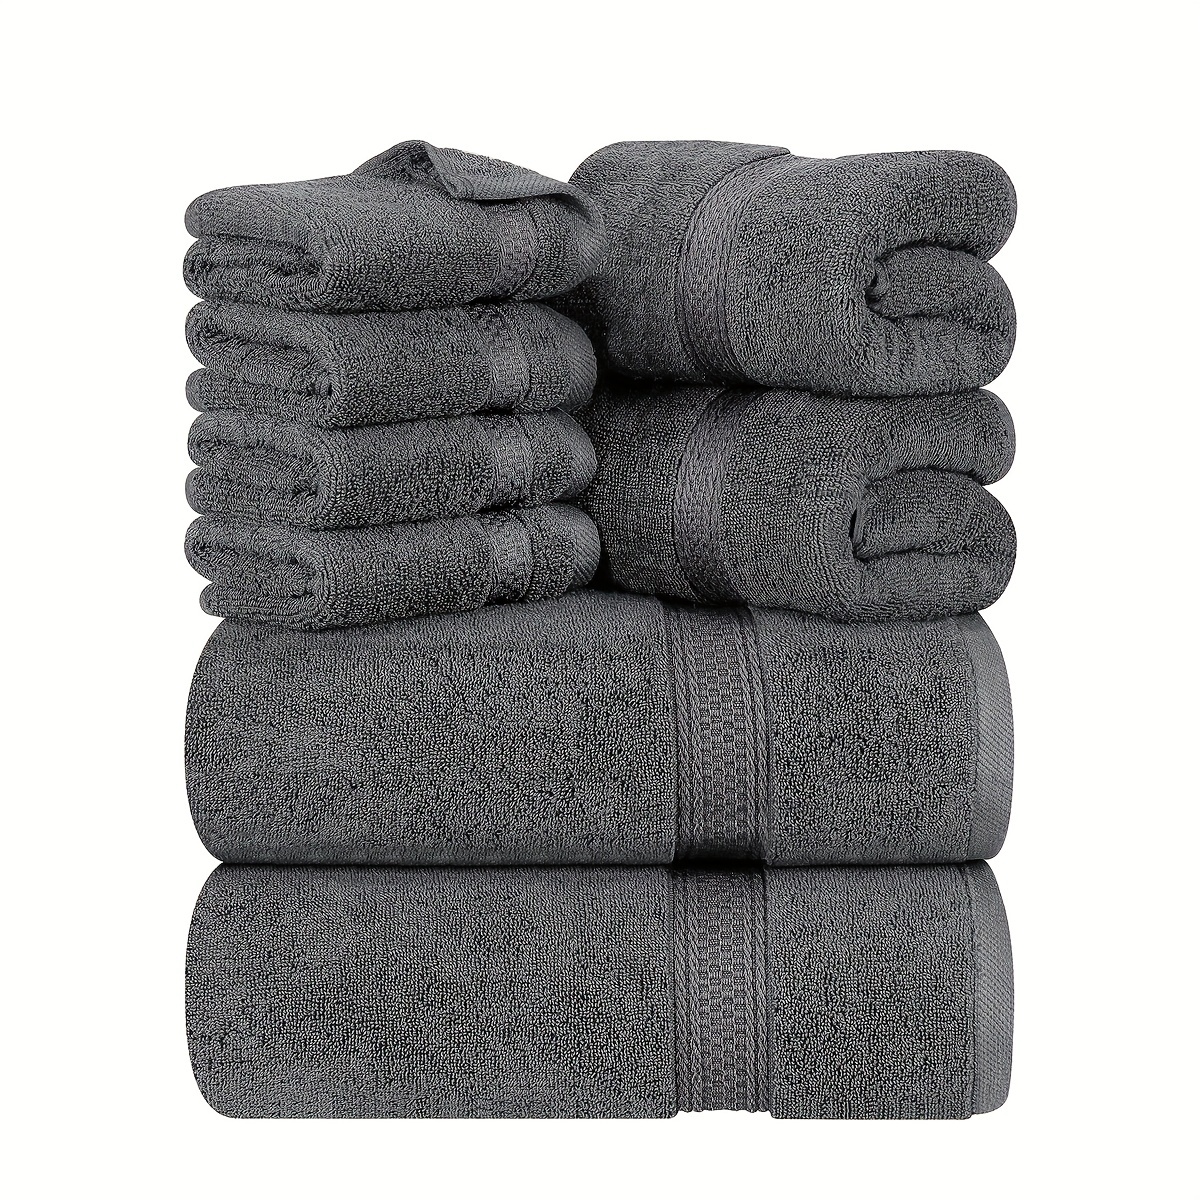 Buy Utopia Towels 8 Piece Towel Set